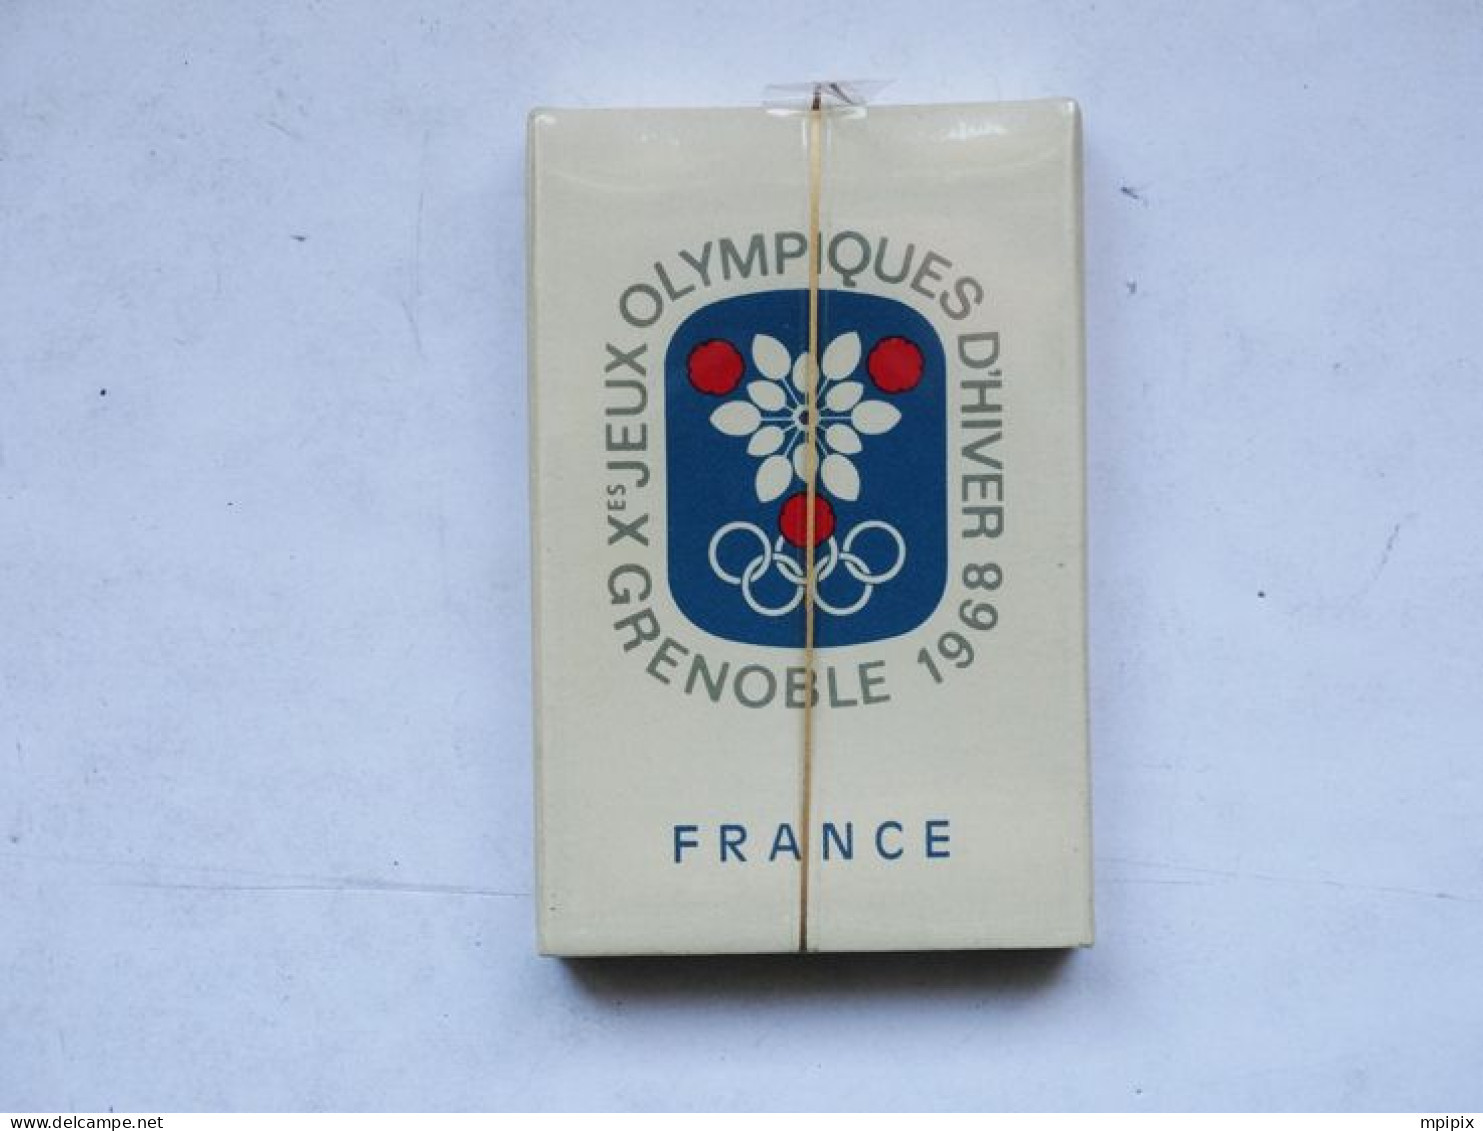 Dernier Paquet De 5 Cigarettes Gitanes Jeux Olympiques D'hiver Grenoble 1968 JO 68 Olympics Winter Games - Apparel, Souvenirs & Other